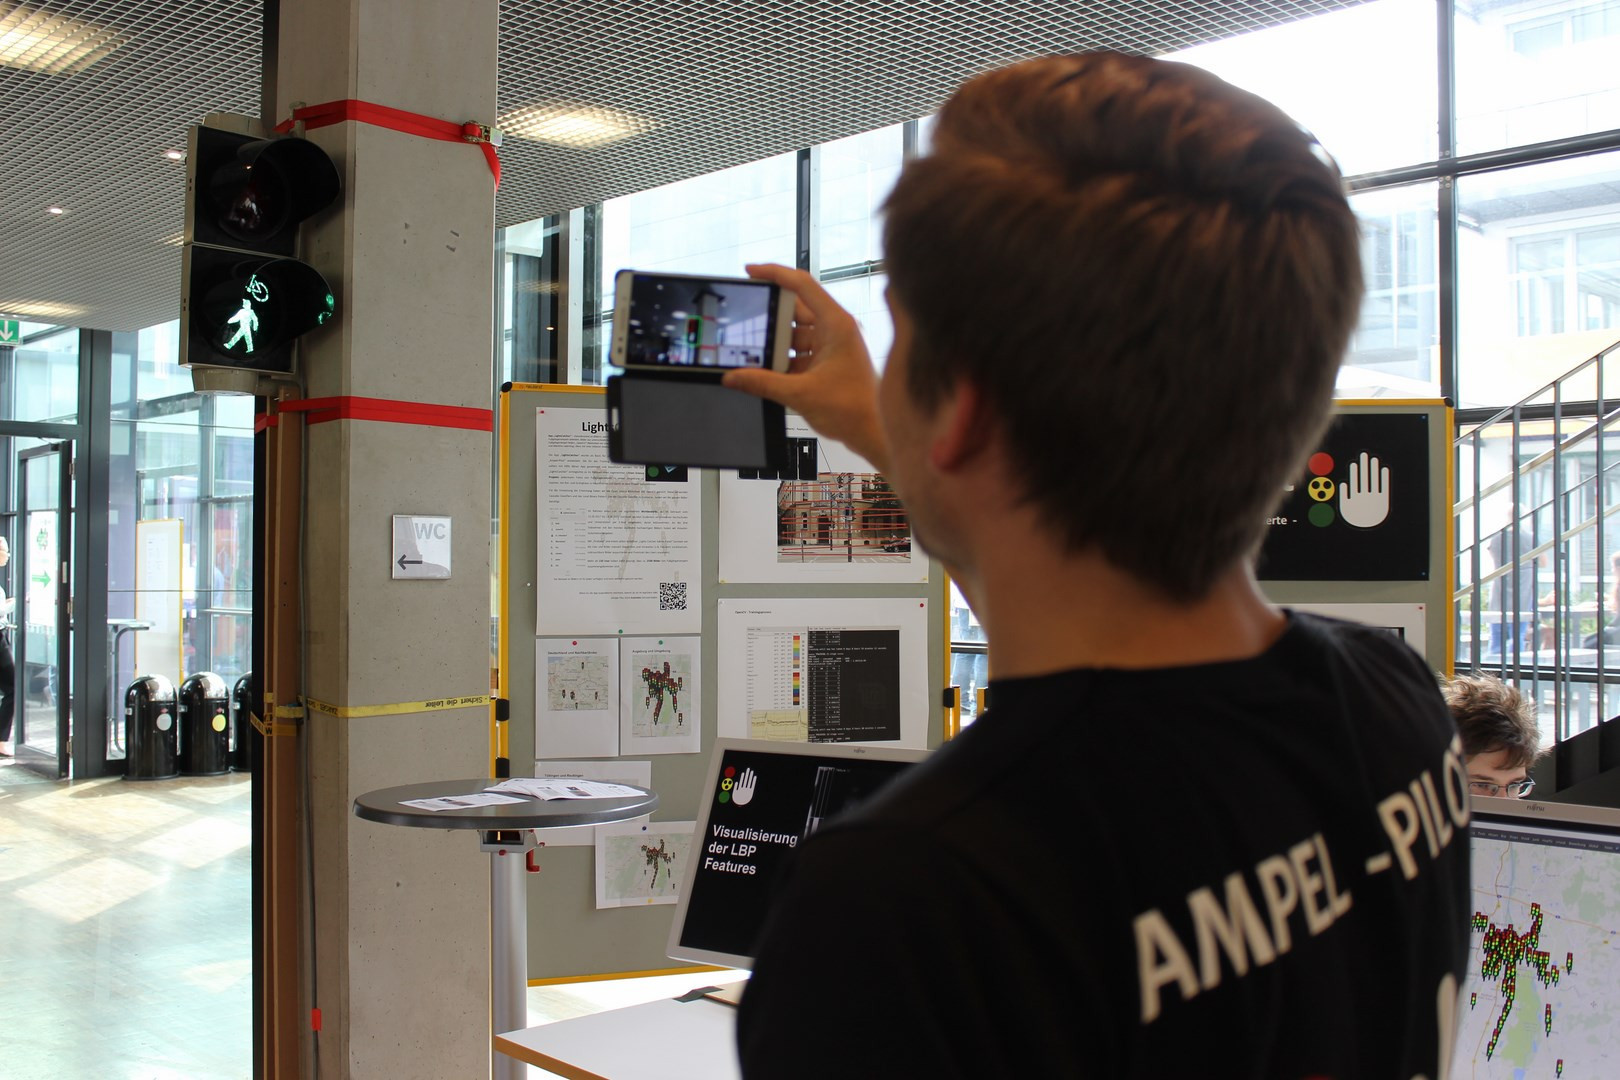 Foto des Projekttags: Ein Student hält sein Smartphone mit der Ampel-Pilot App in Richtung einer Fußgängerampel.